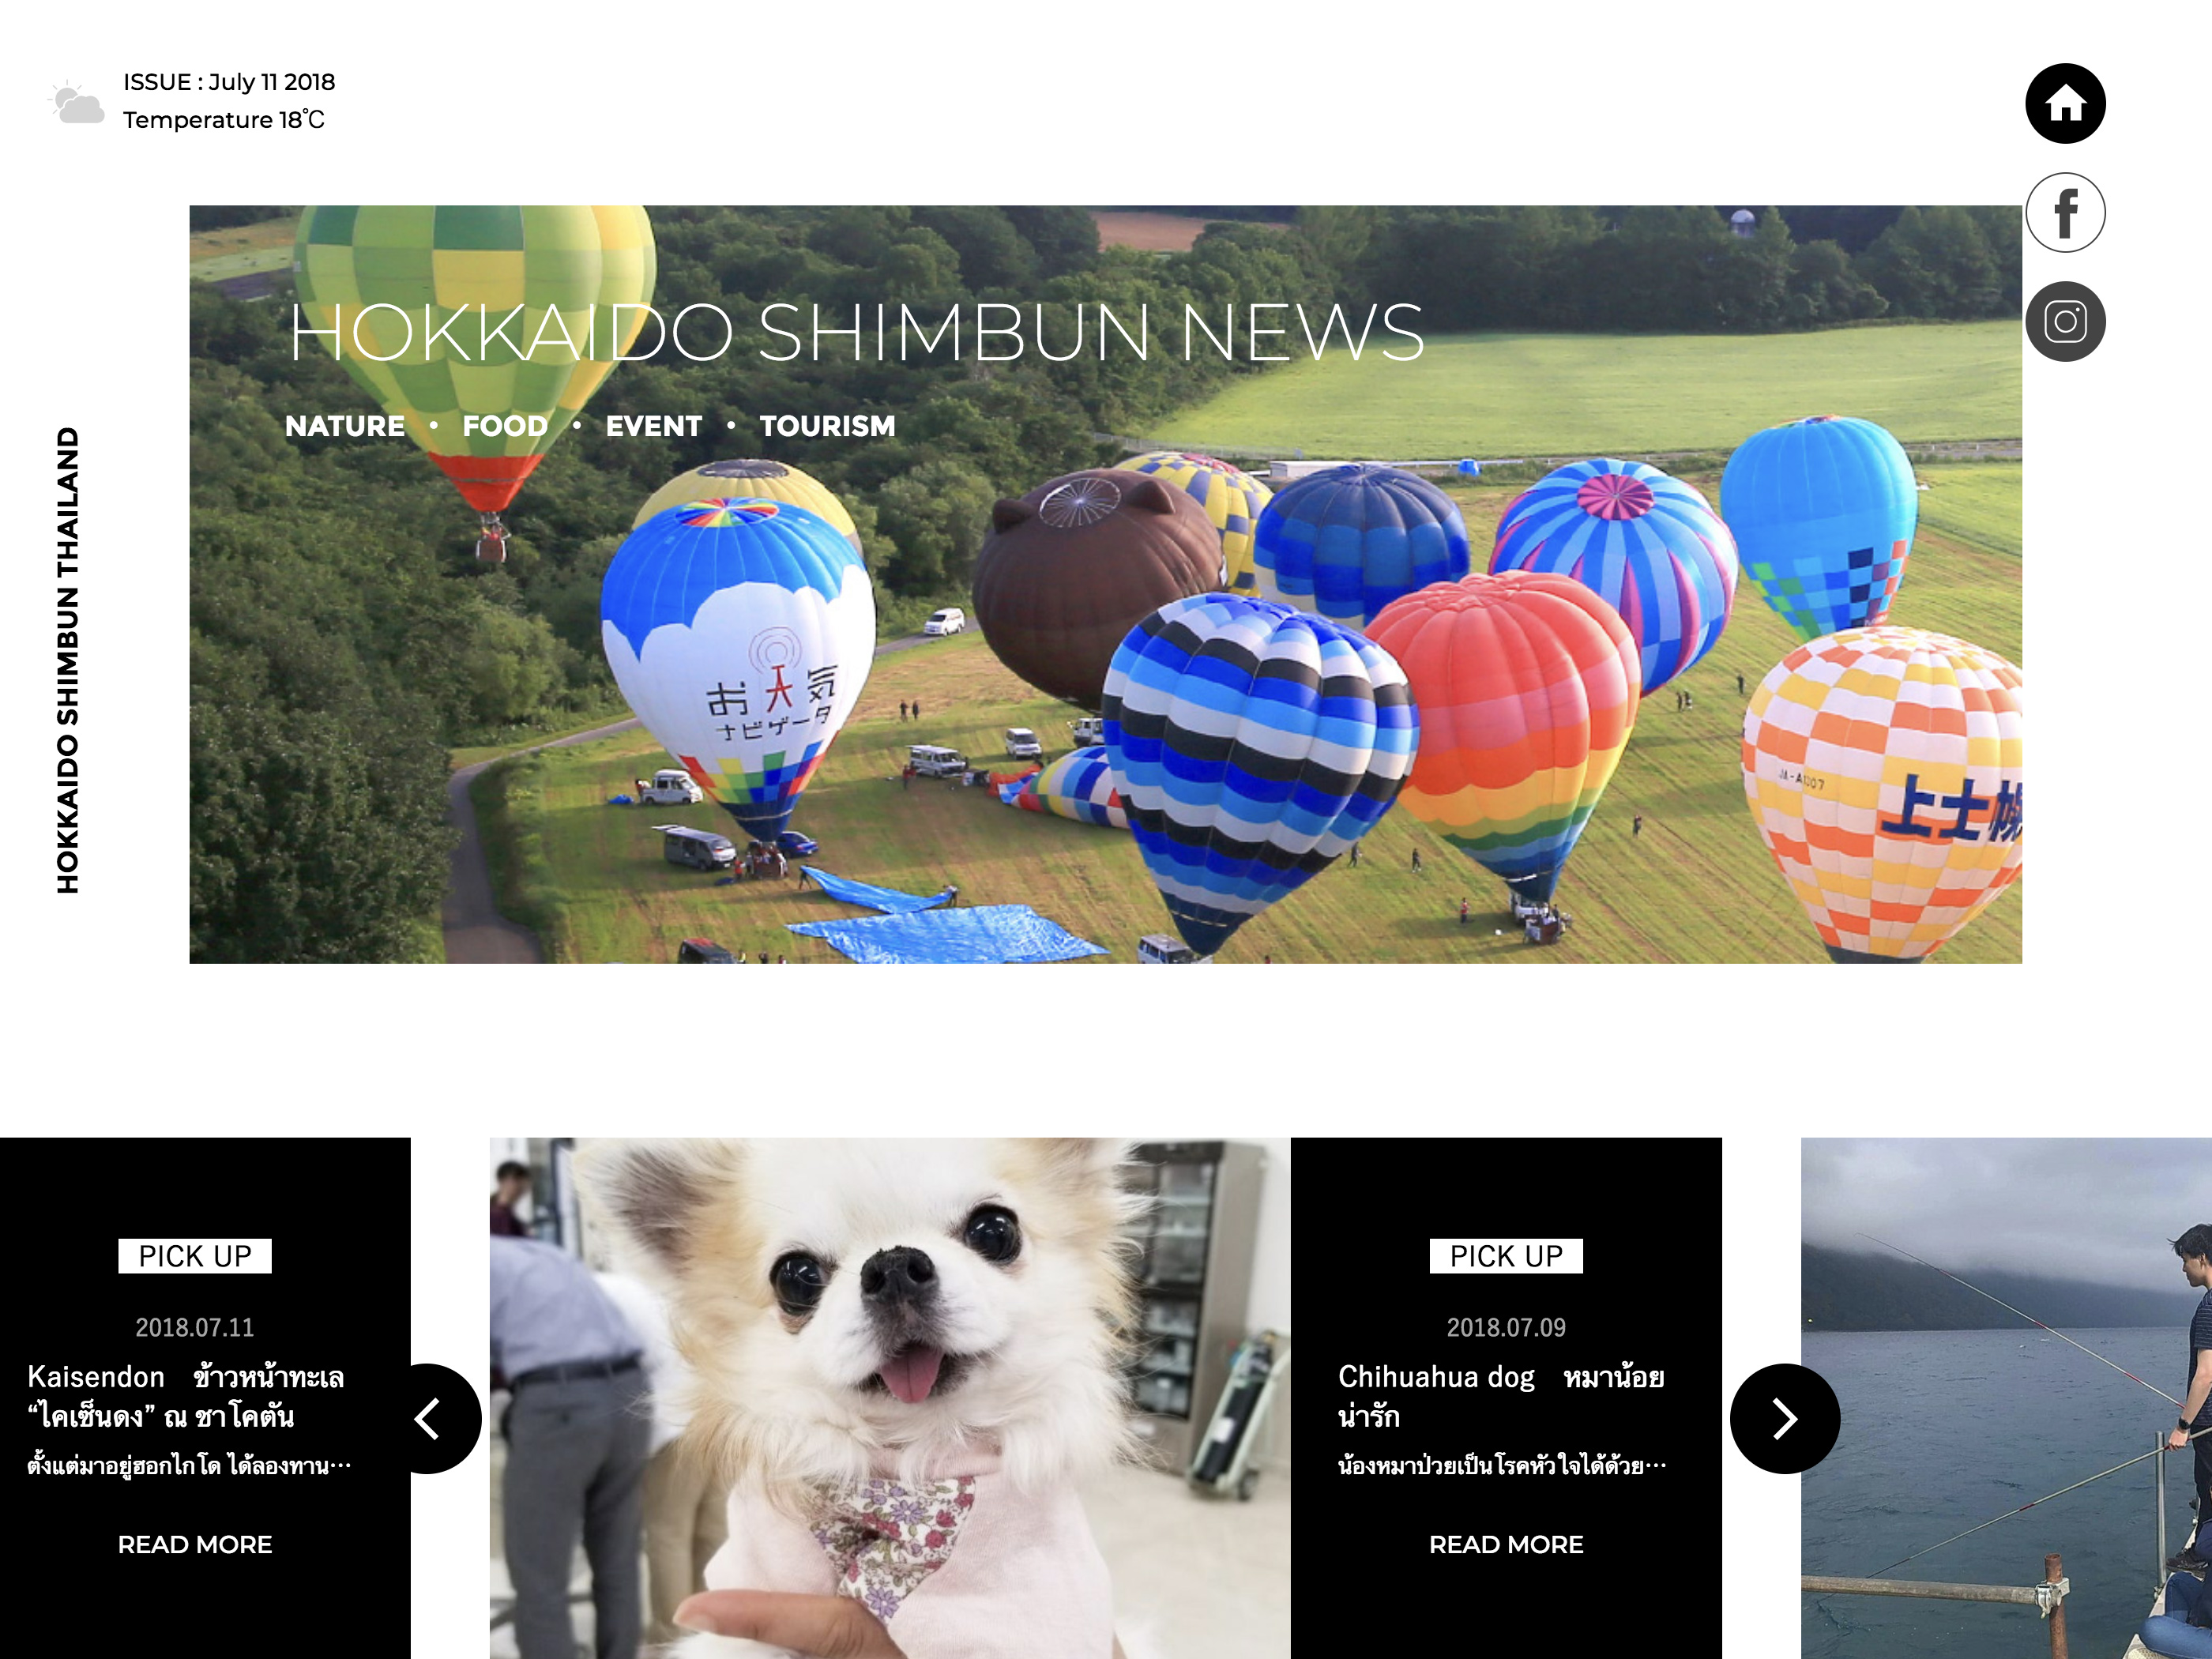 HOKKAIDO SHIMBUN NEWS │ มาชมข่าวสารของฮอกไกโด เพิ่มขึ้นกัน